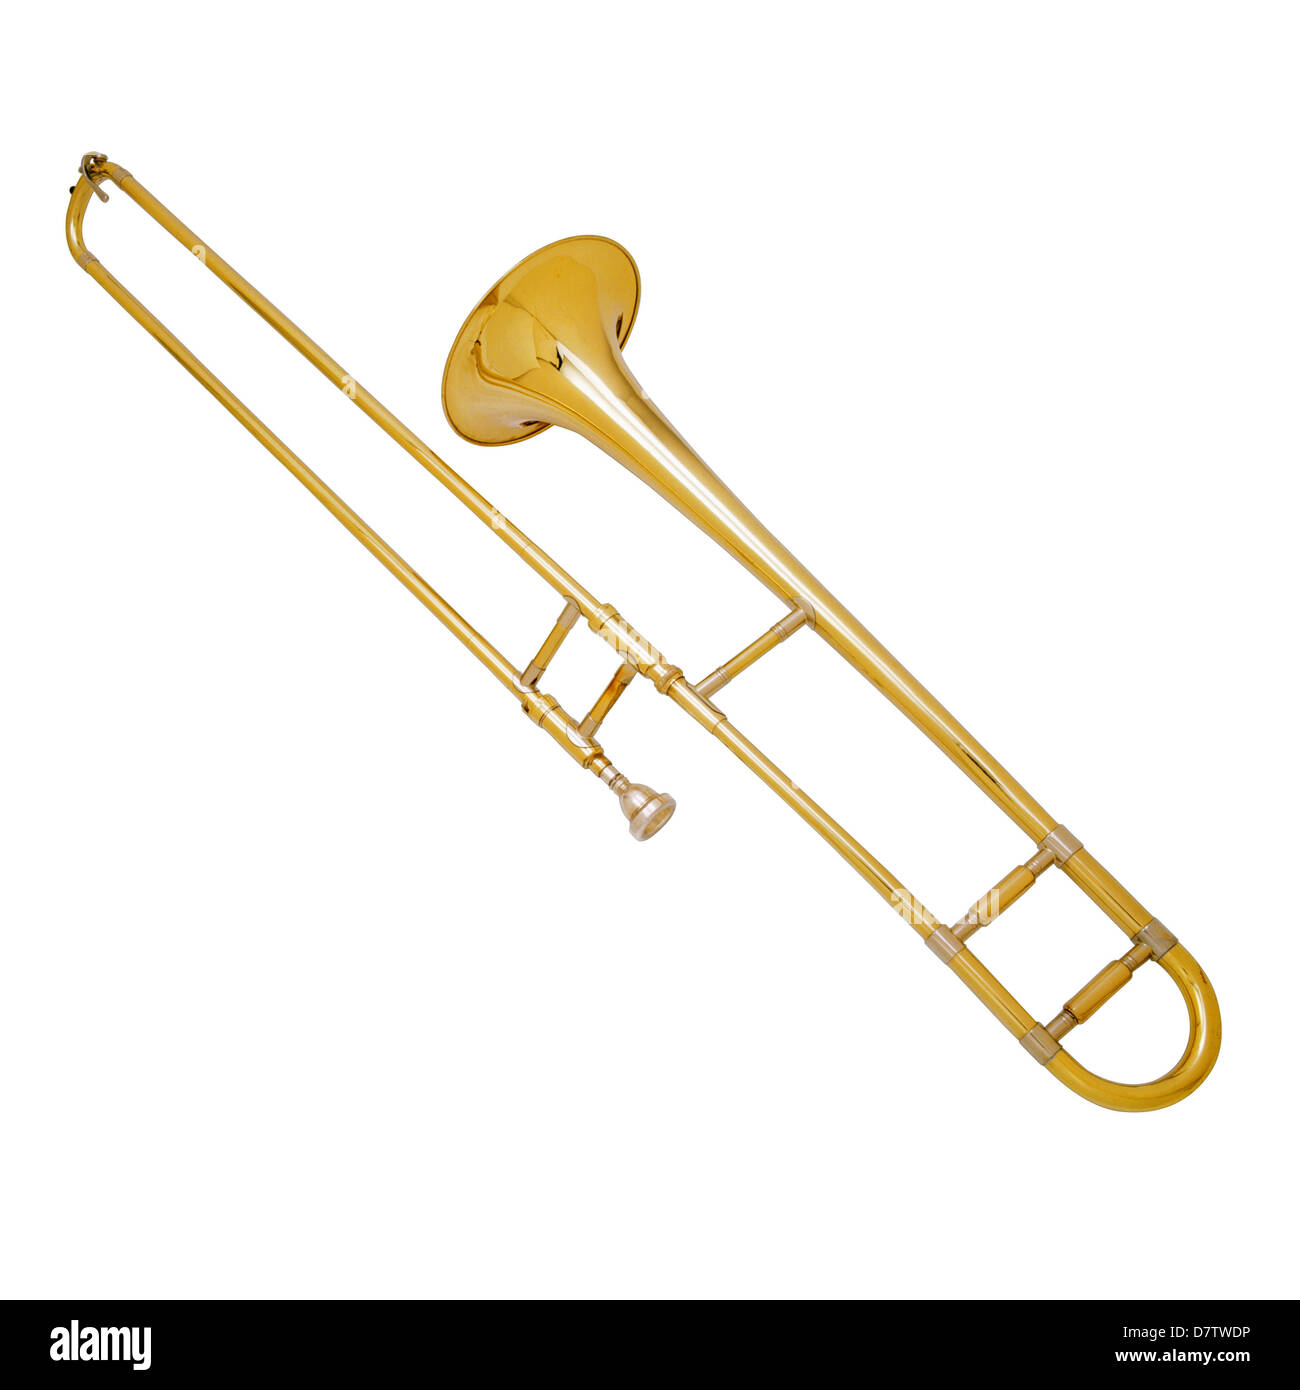 Trombone musical instrument Stock Photo